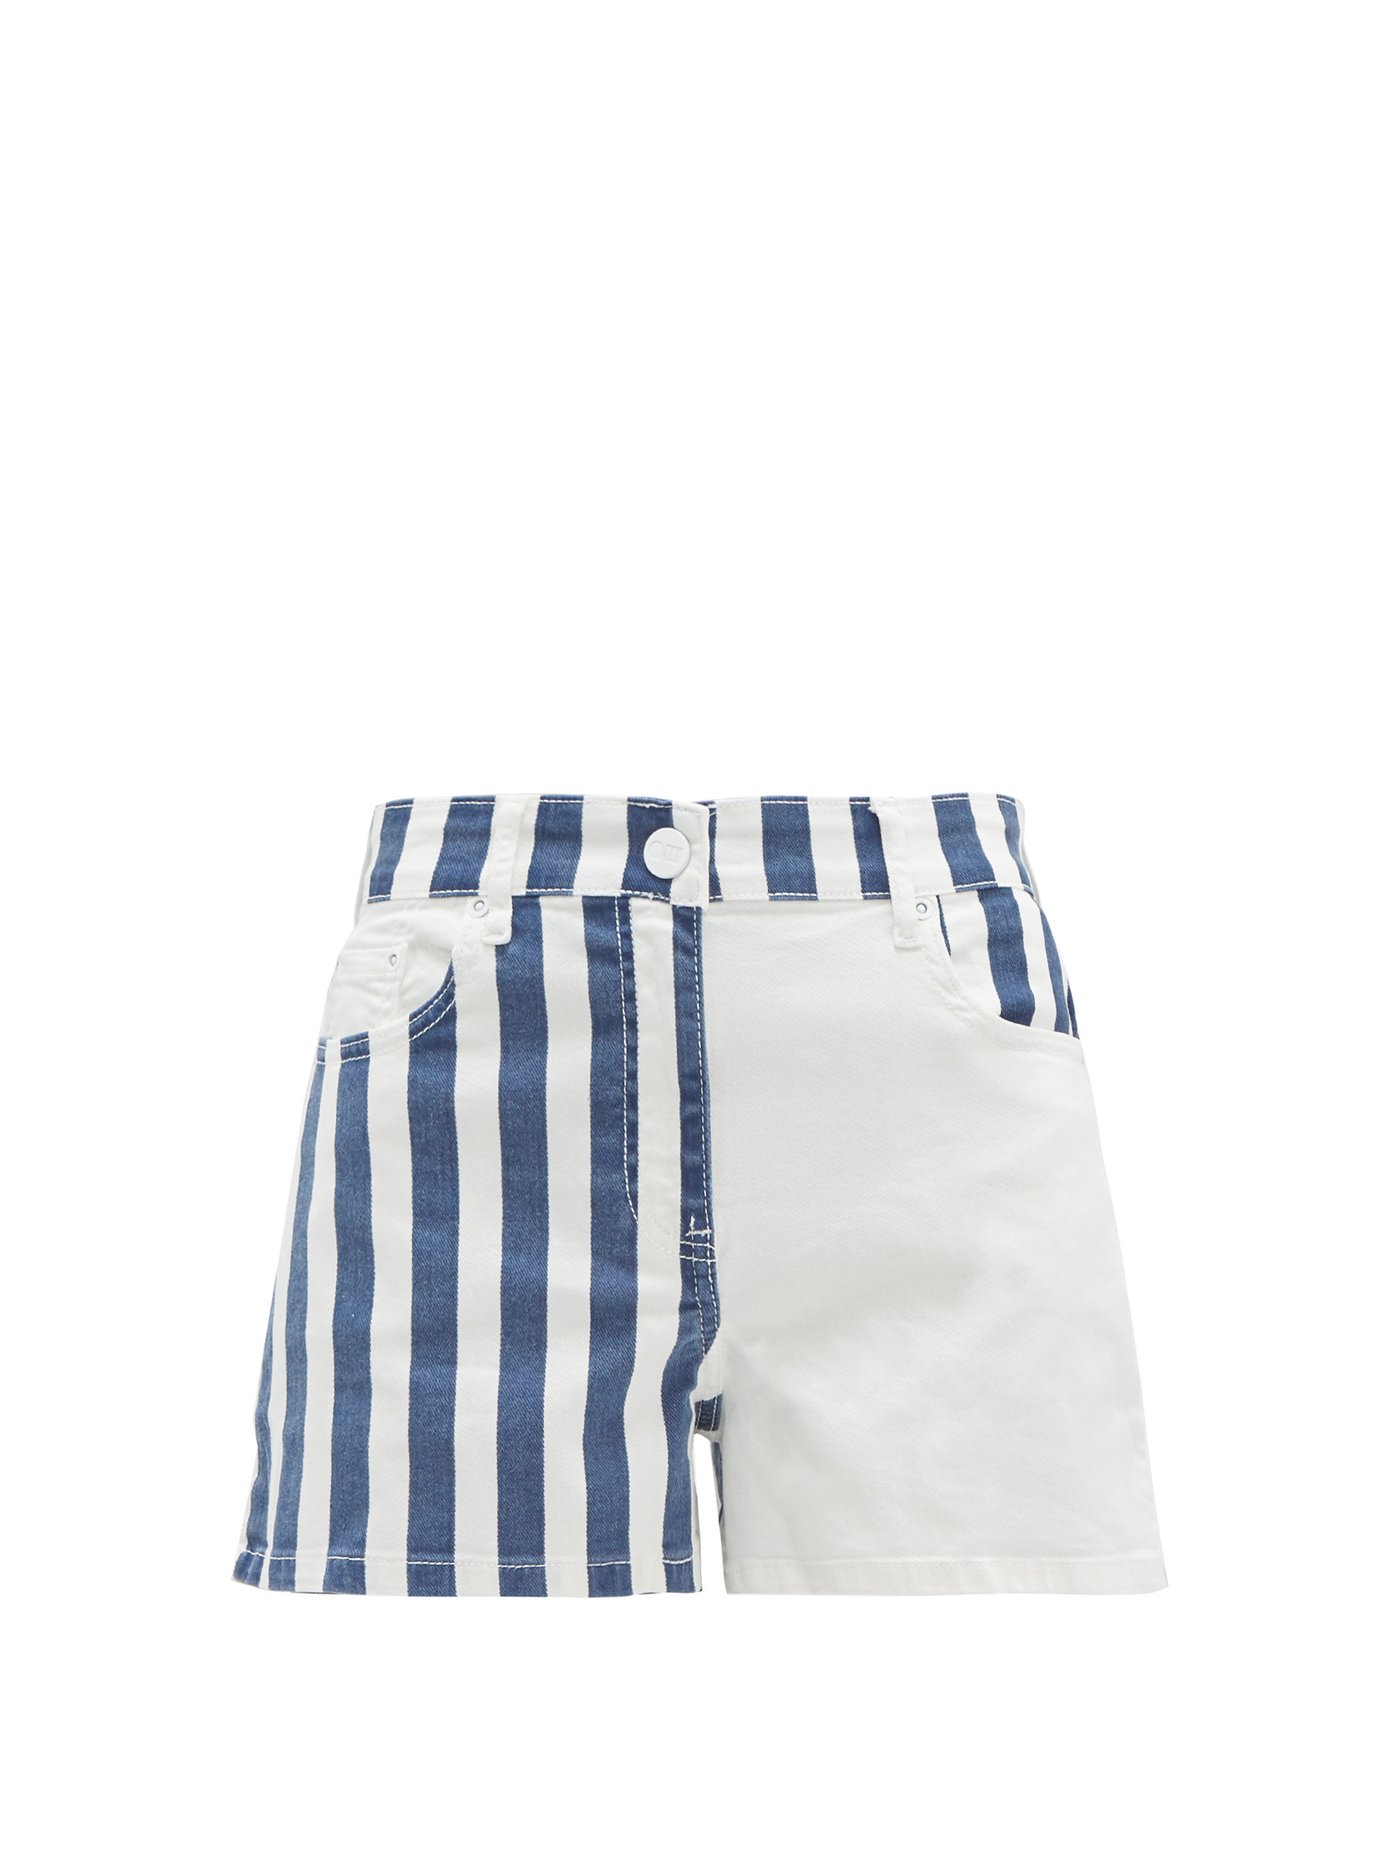 blue and white striped denim shorts